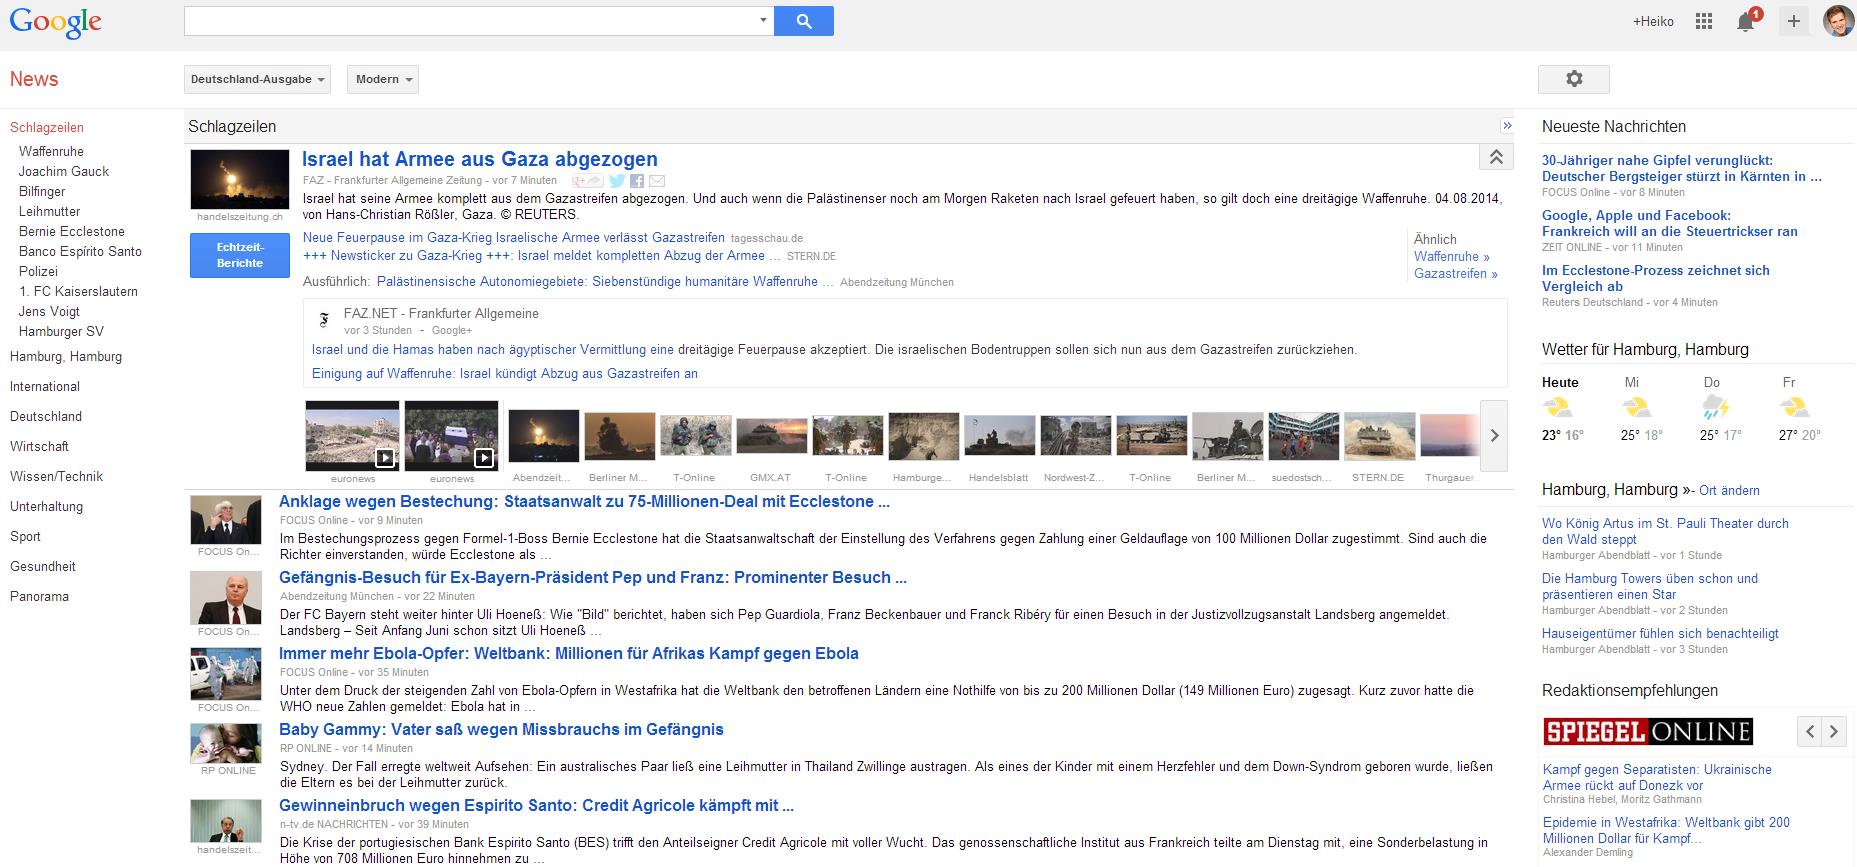 Neues „Google News Publisher Center“ soll für optimale Berichterstattung auf Google News sorgen